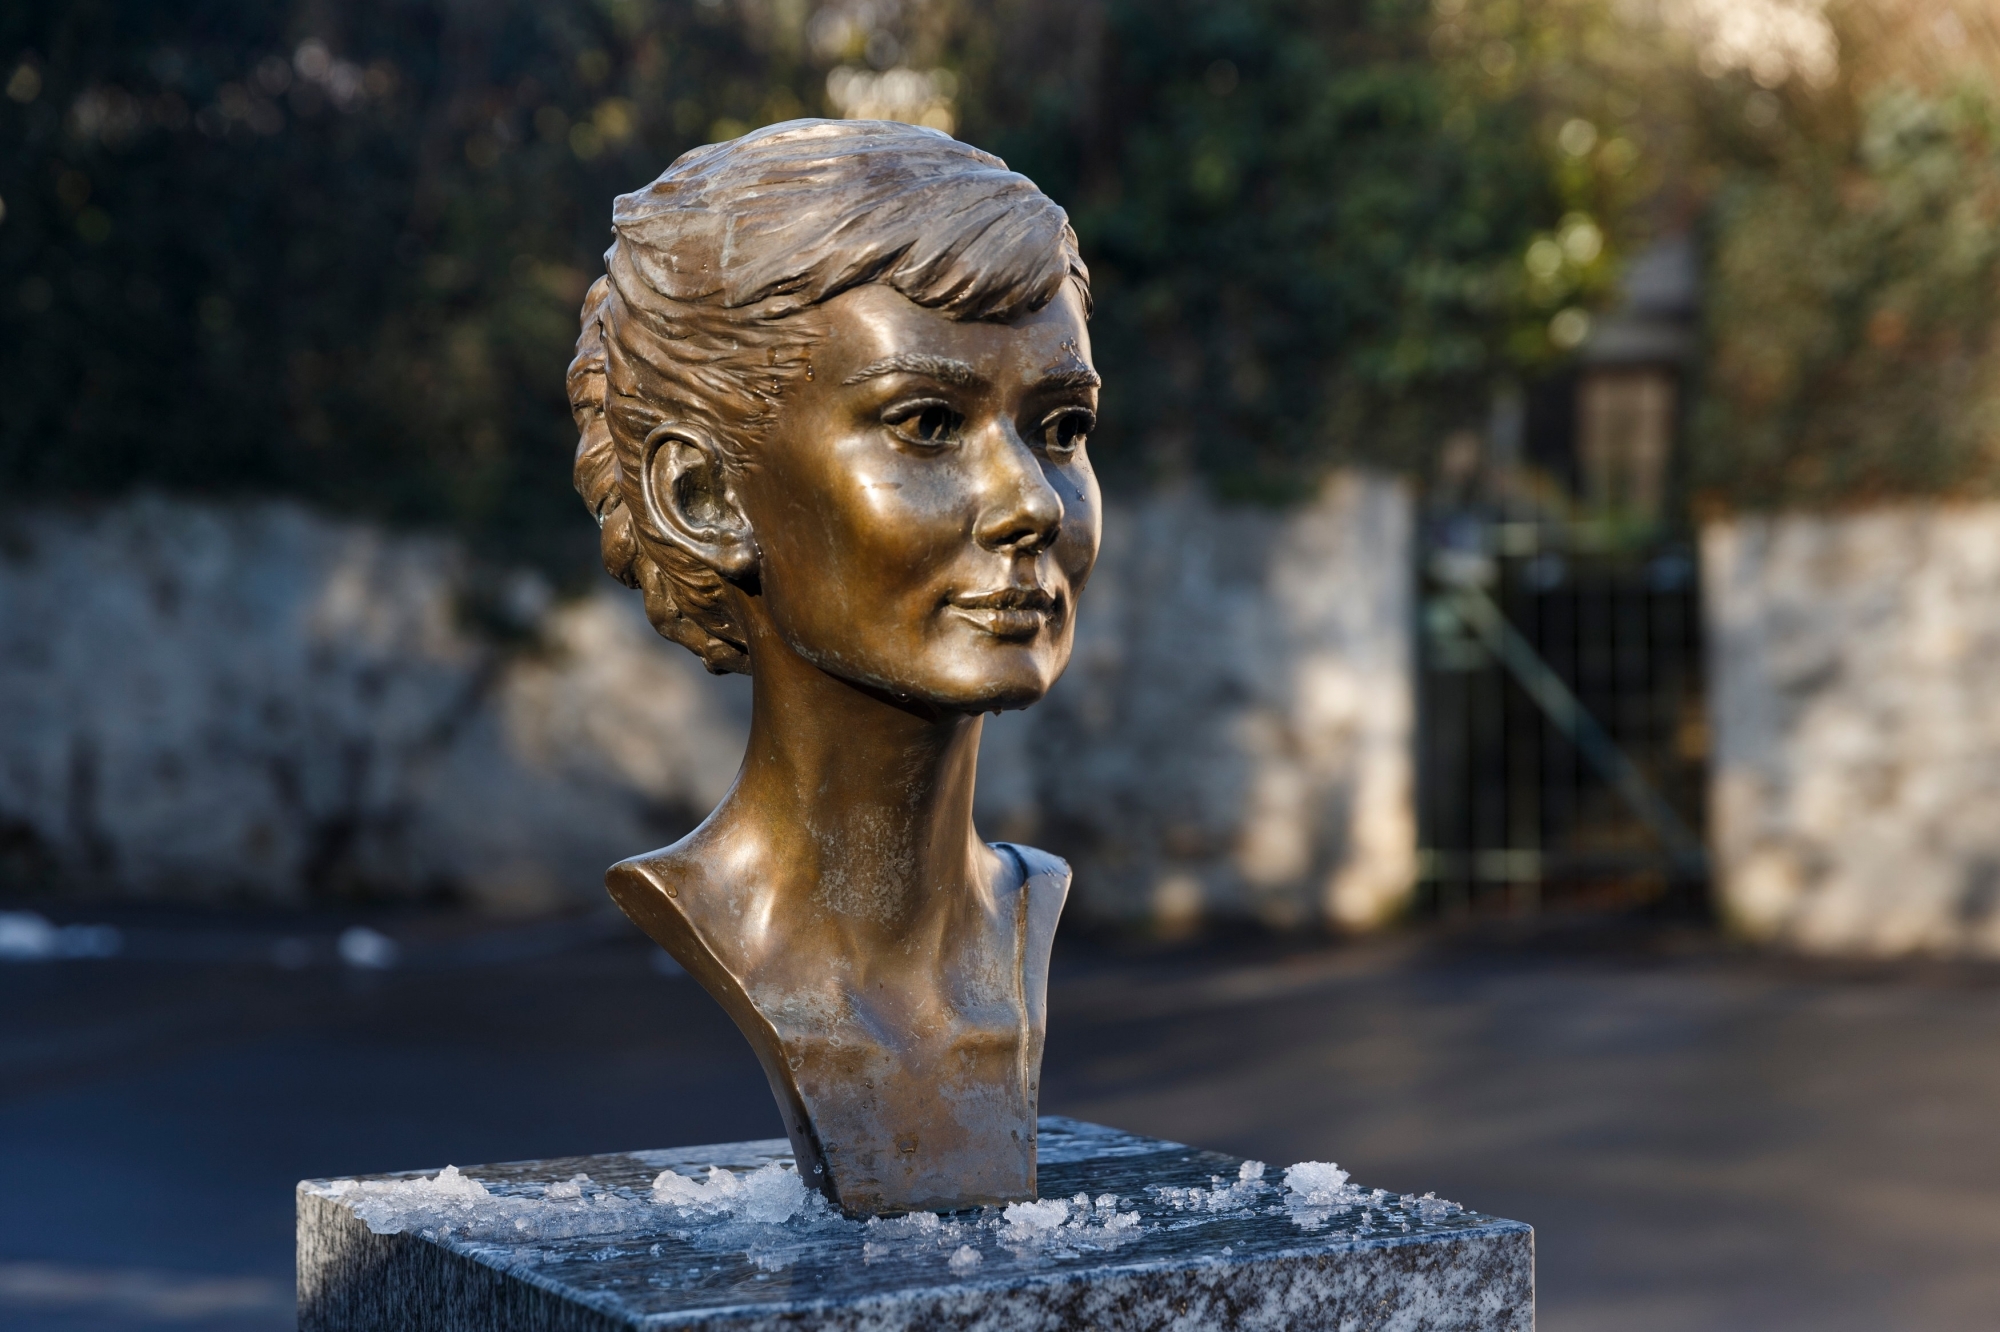 Les promeneurs peuvent notamment découvrir la place Audrey Hepburn, où un buste de l'actrice a été installé en 2012.